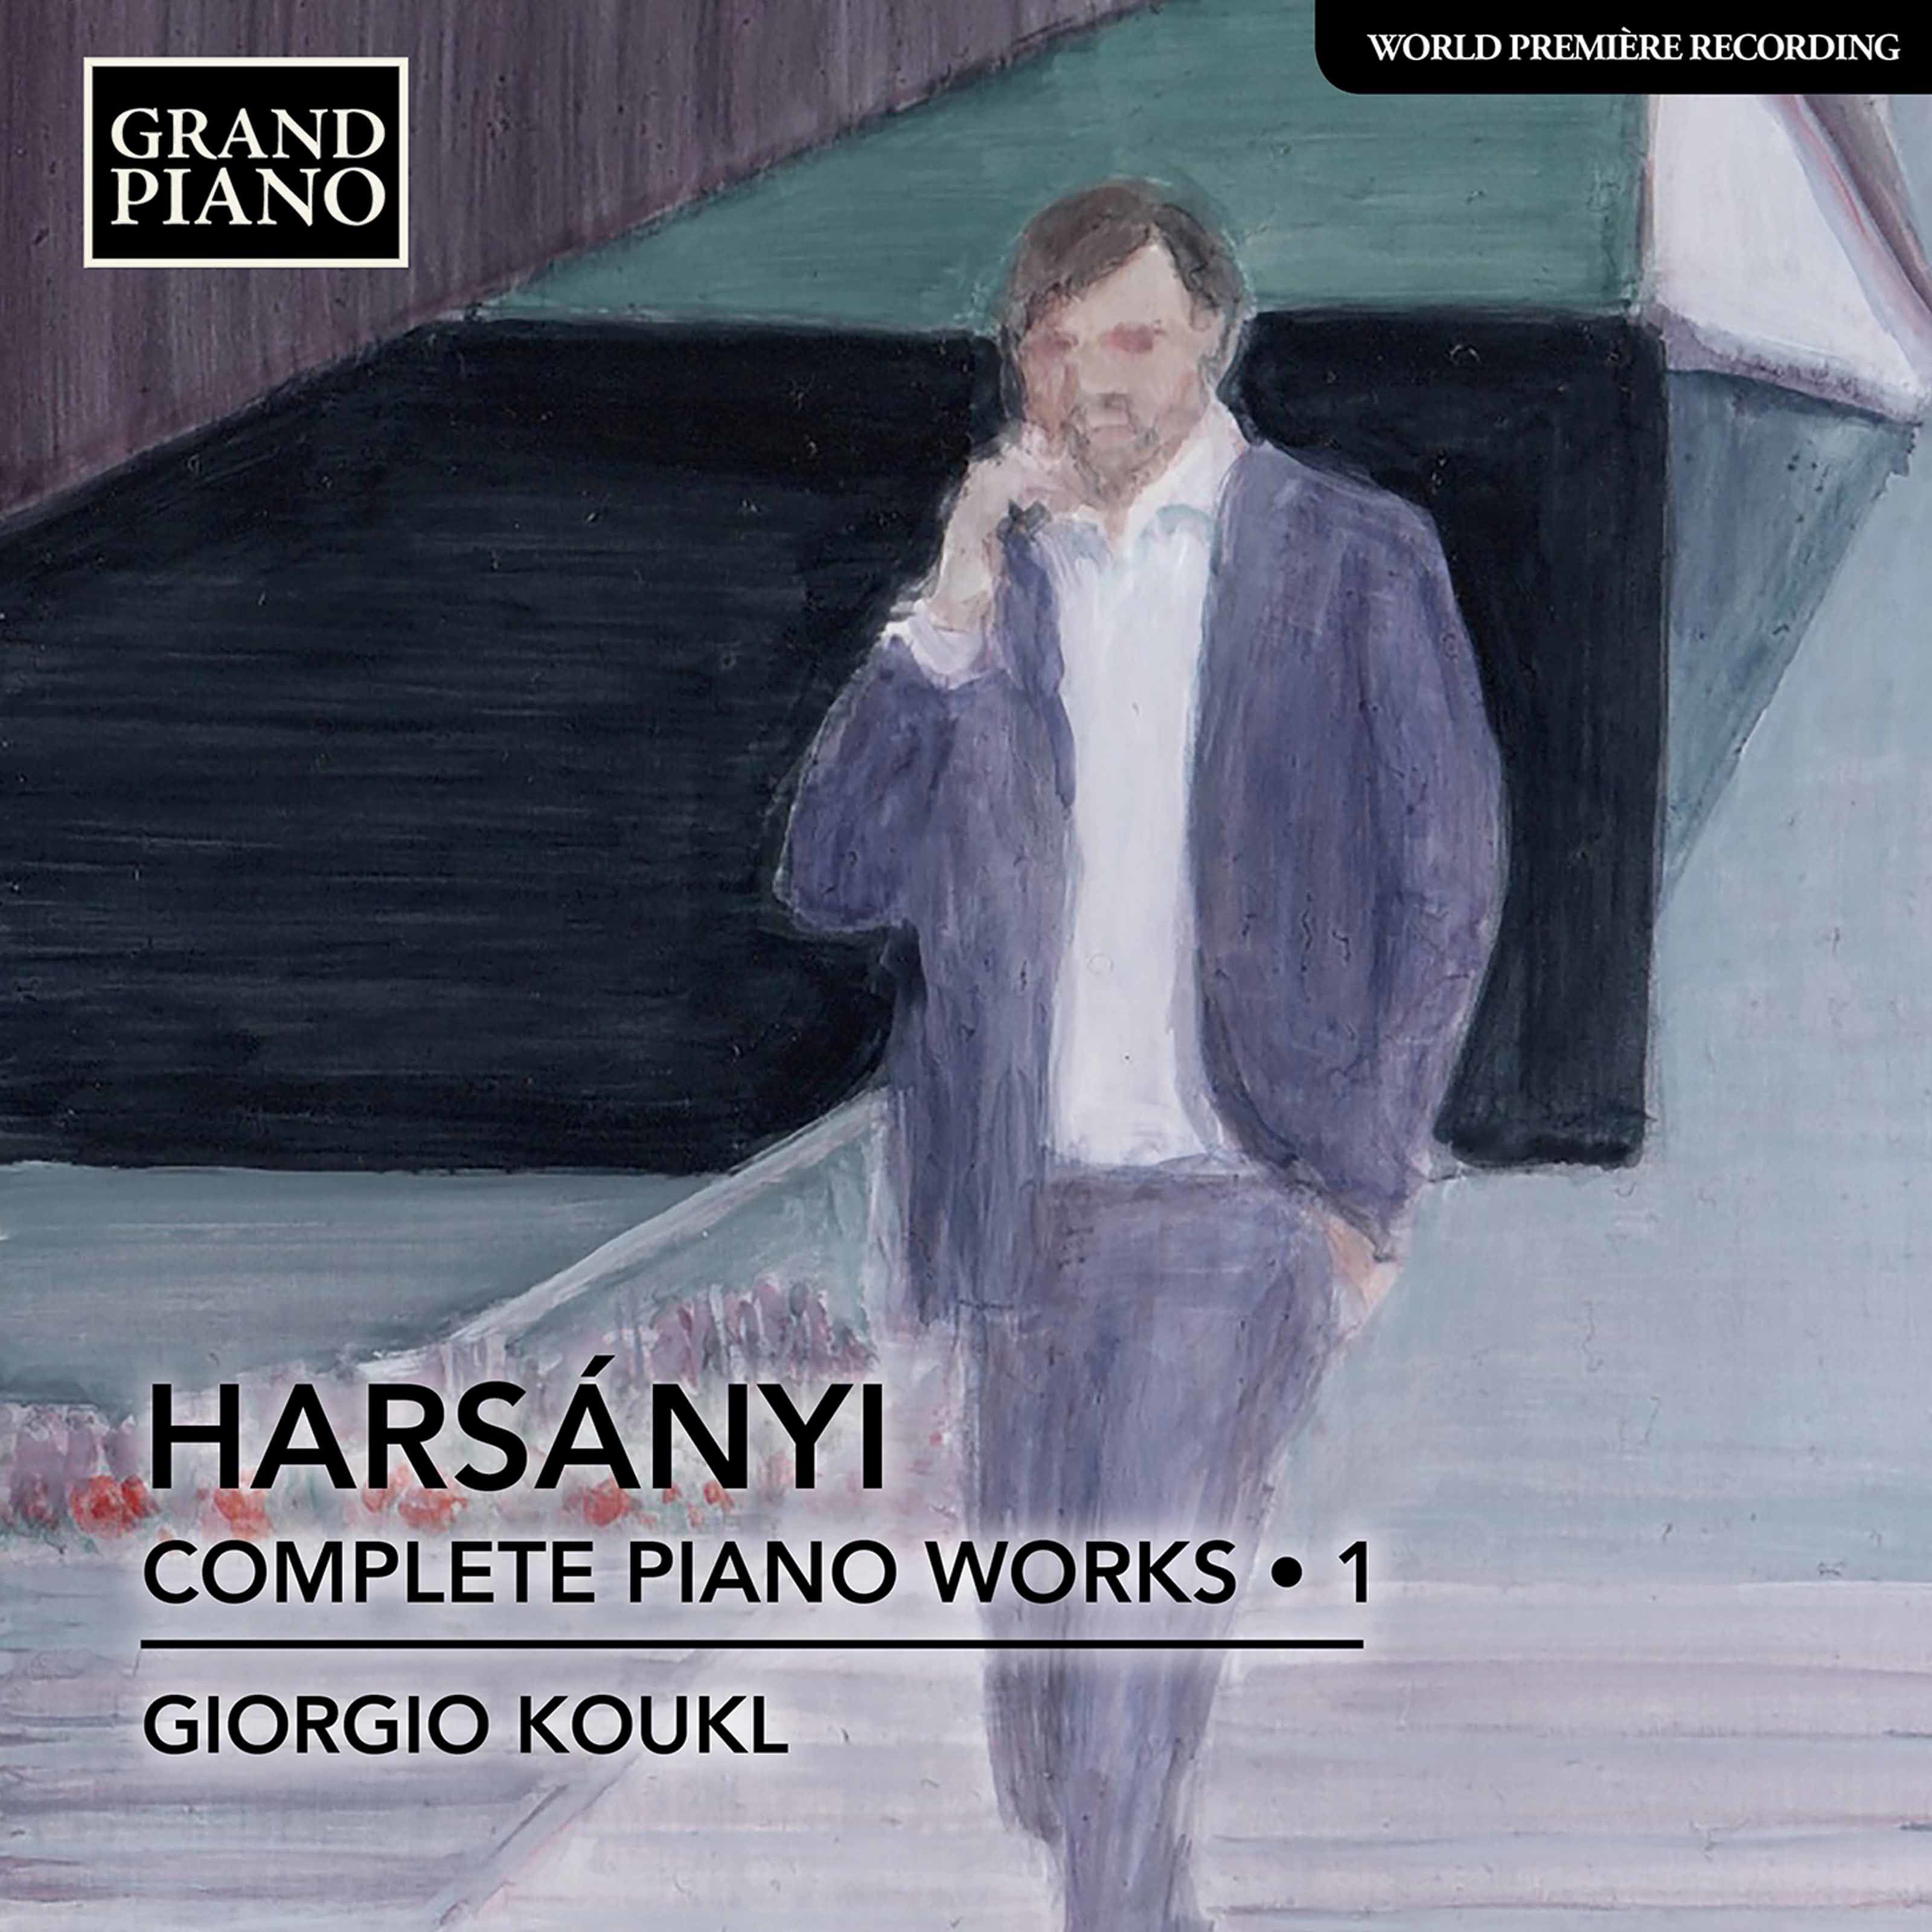 Giorgio Koukl – Harsanyi: Complete Piano Works, Vol. 1 (2020) [FLAC 24bit/96kHz]